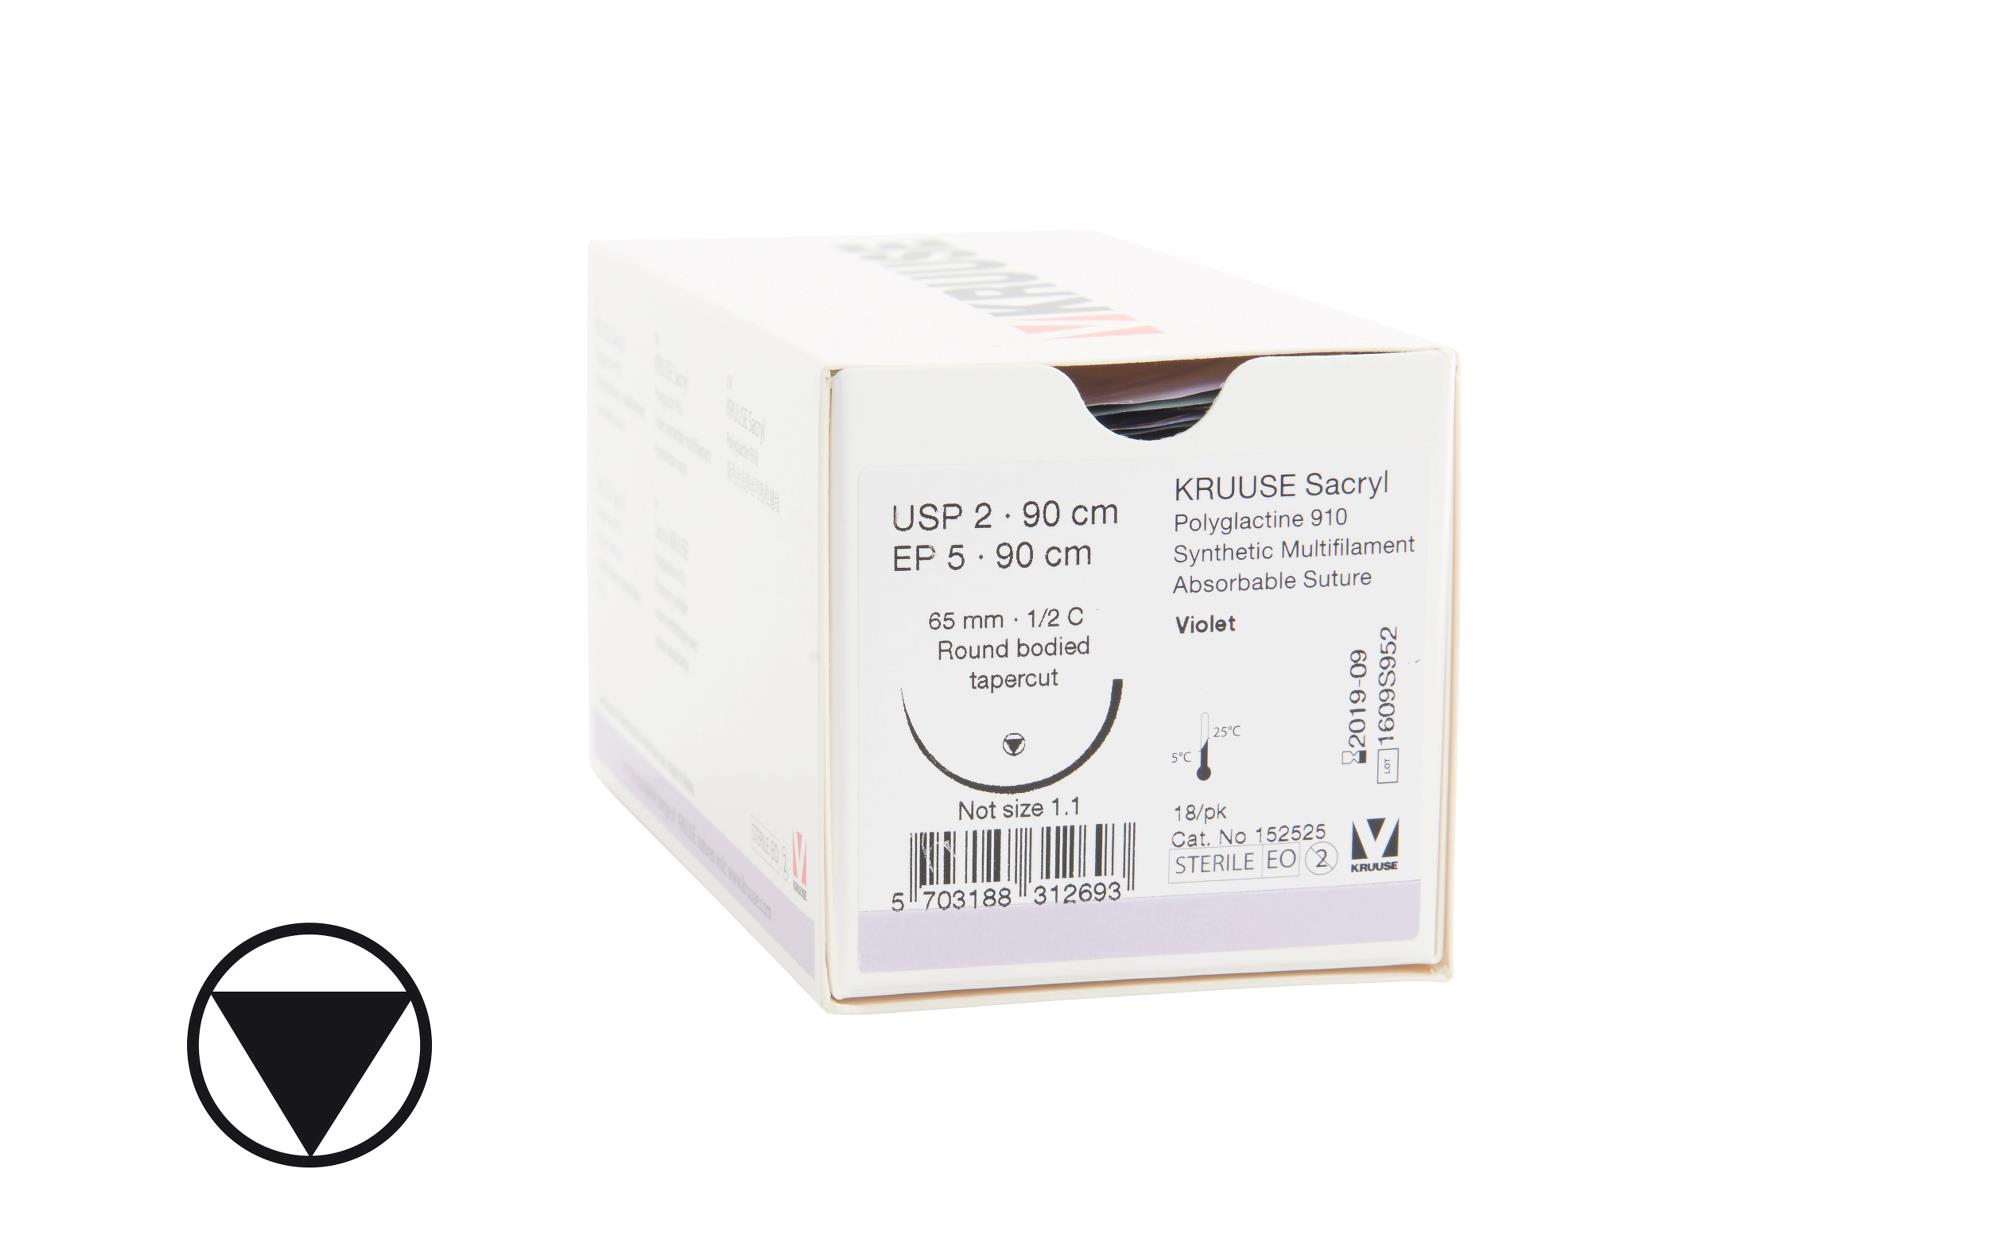 KRUUSE Sacryl Suture, USP 2/EP 5, 90 cm. needle:  65 mm, ½ C, RB, tapercut, 18/pk